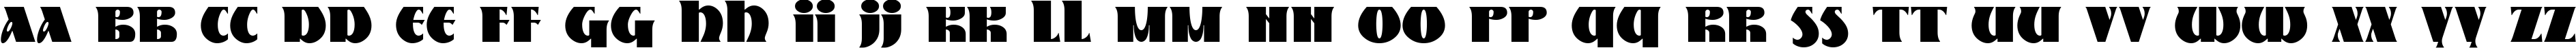 Пример написания английского алфавита шрифтом Nestor